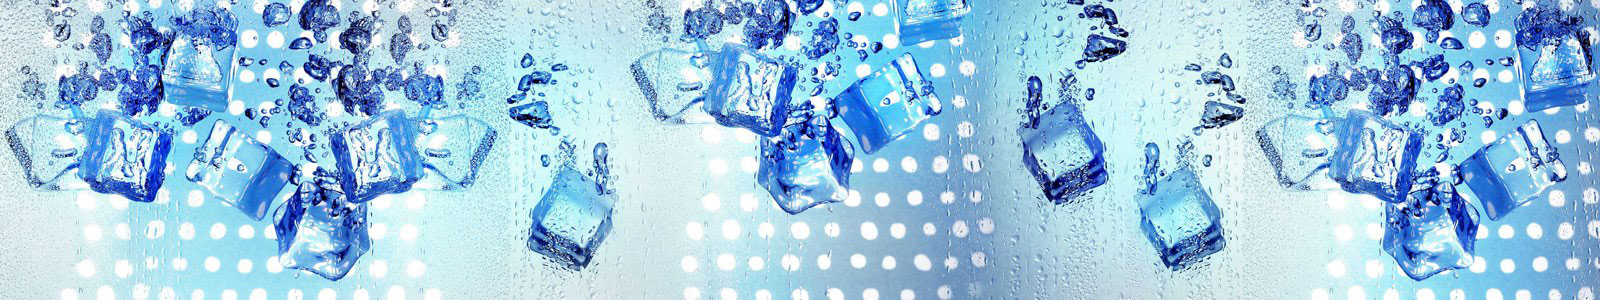 №6329 - Кубики льда, падающие в воду